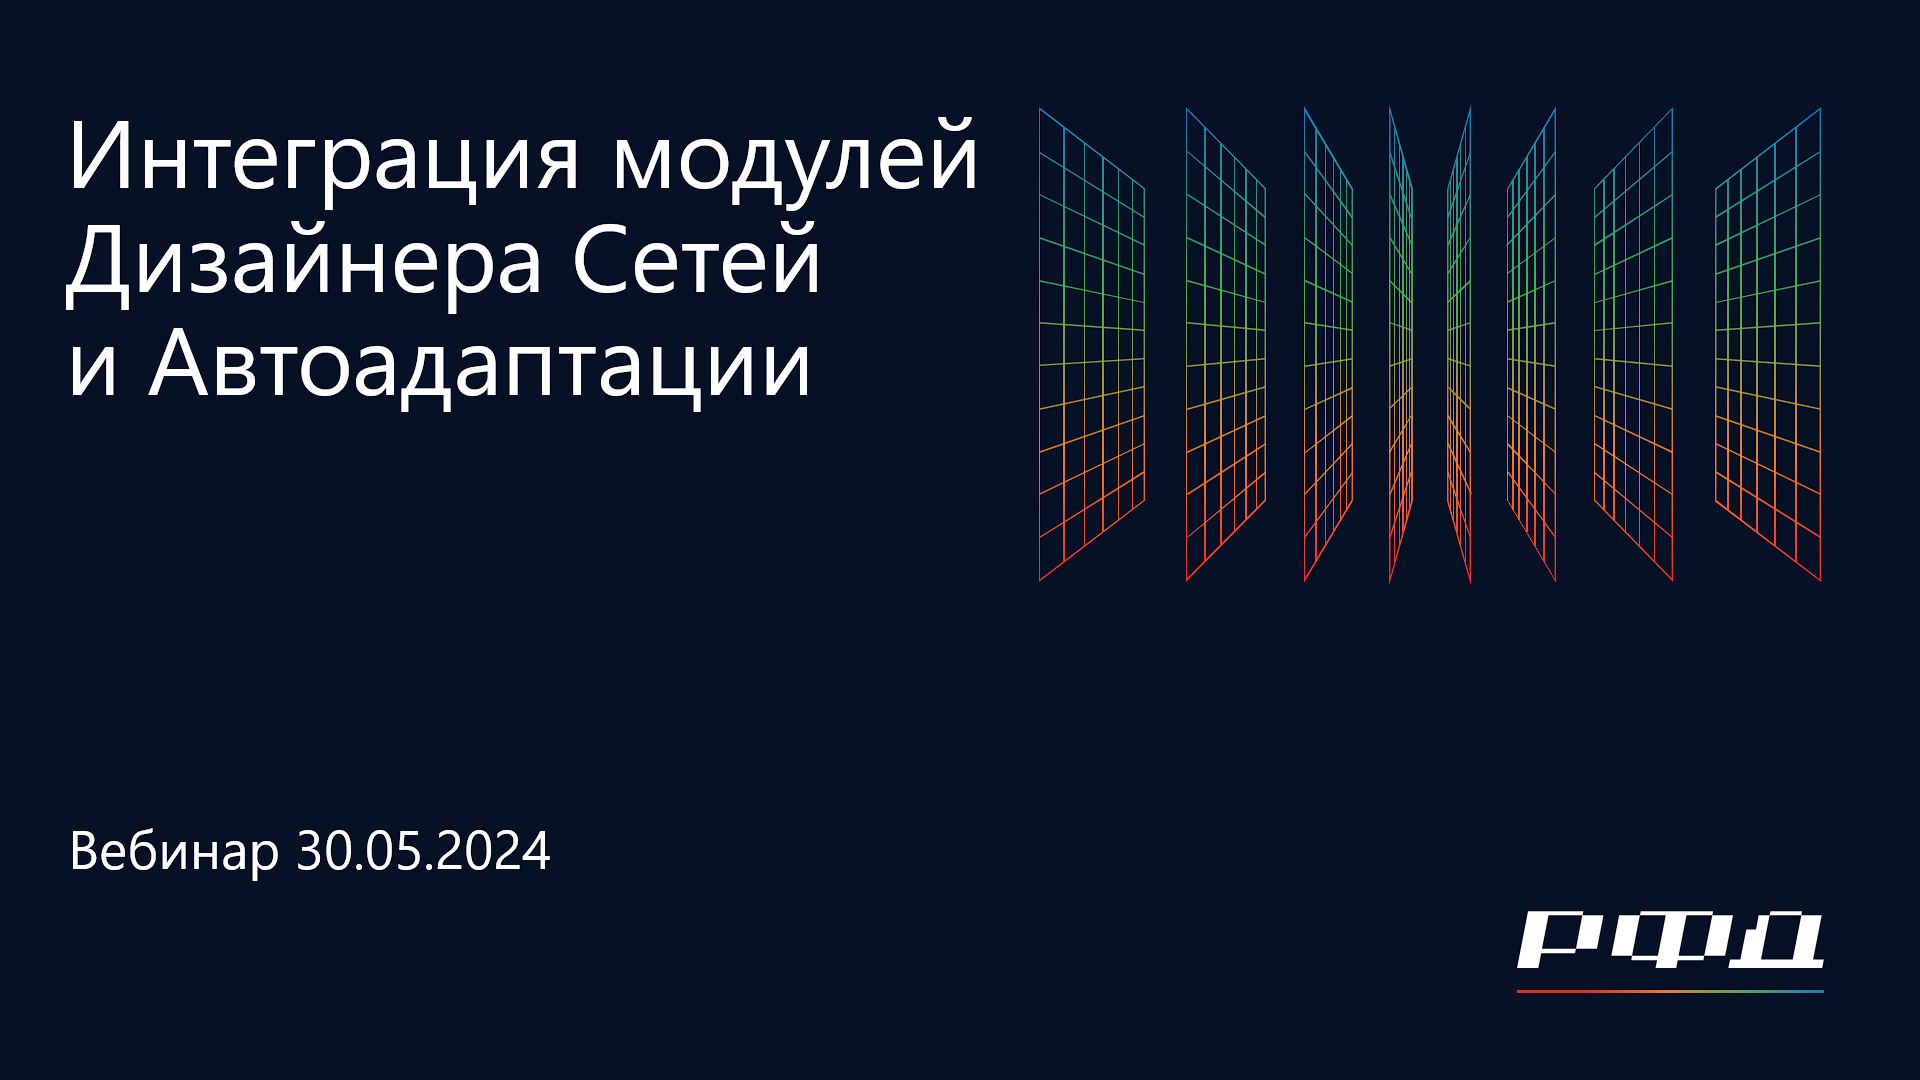 тНавигатор 2-я Серия Вебинаров 2024 | 05 Интеграция модулей Дизайнера Сетей и Автоадаптации